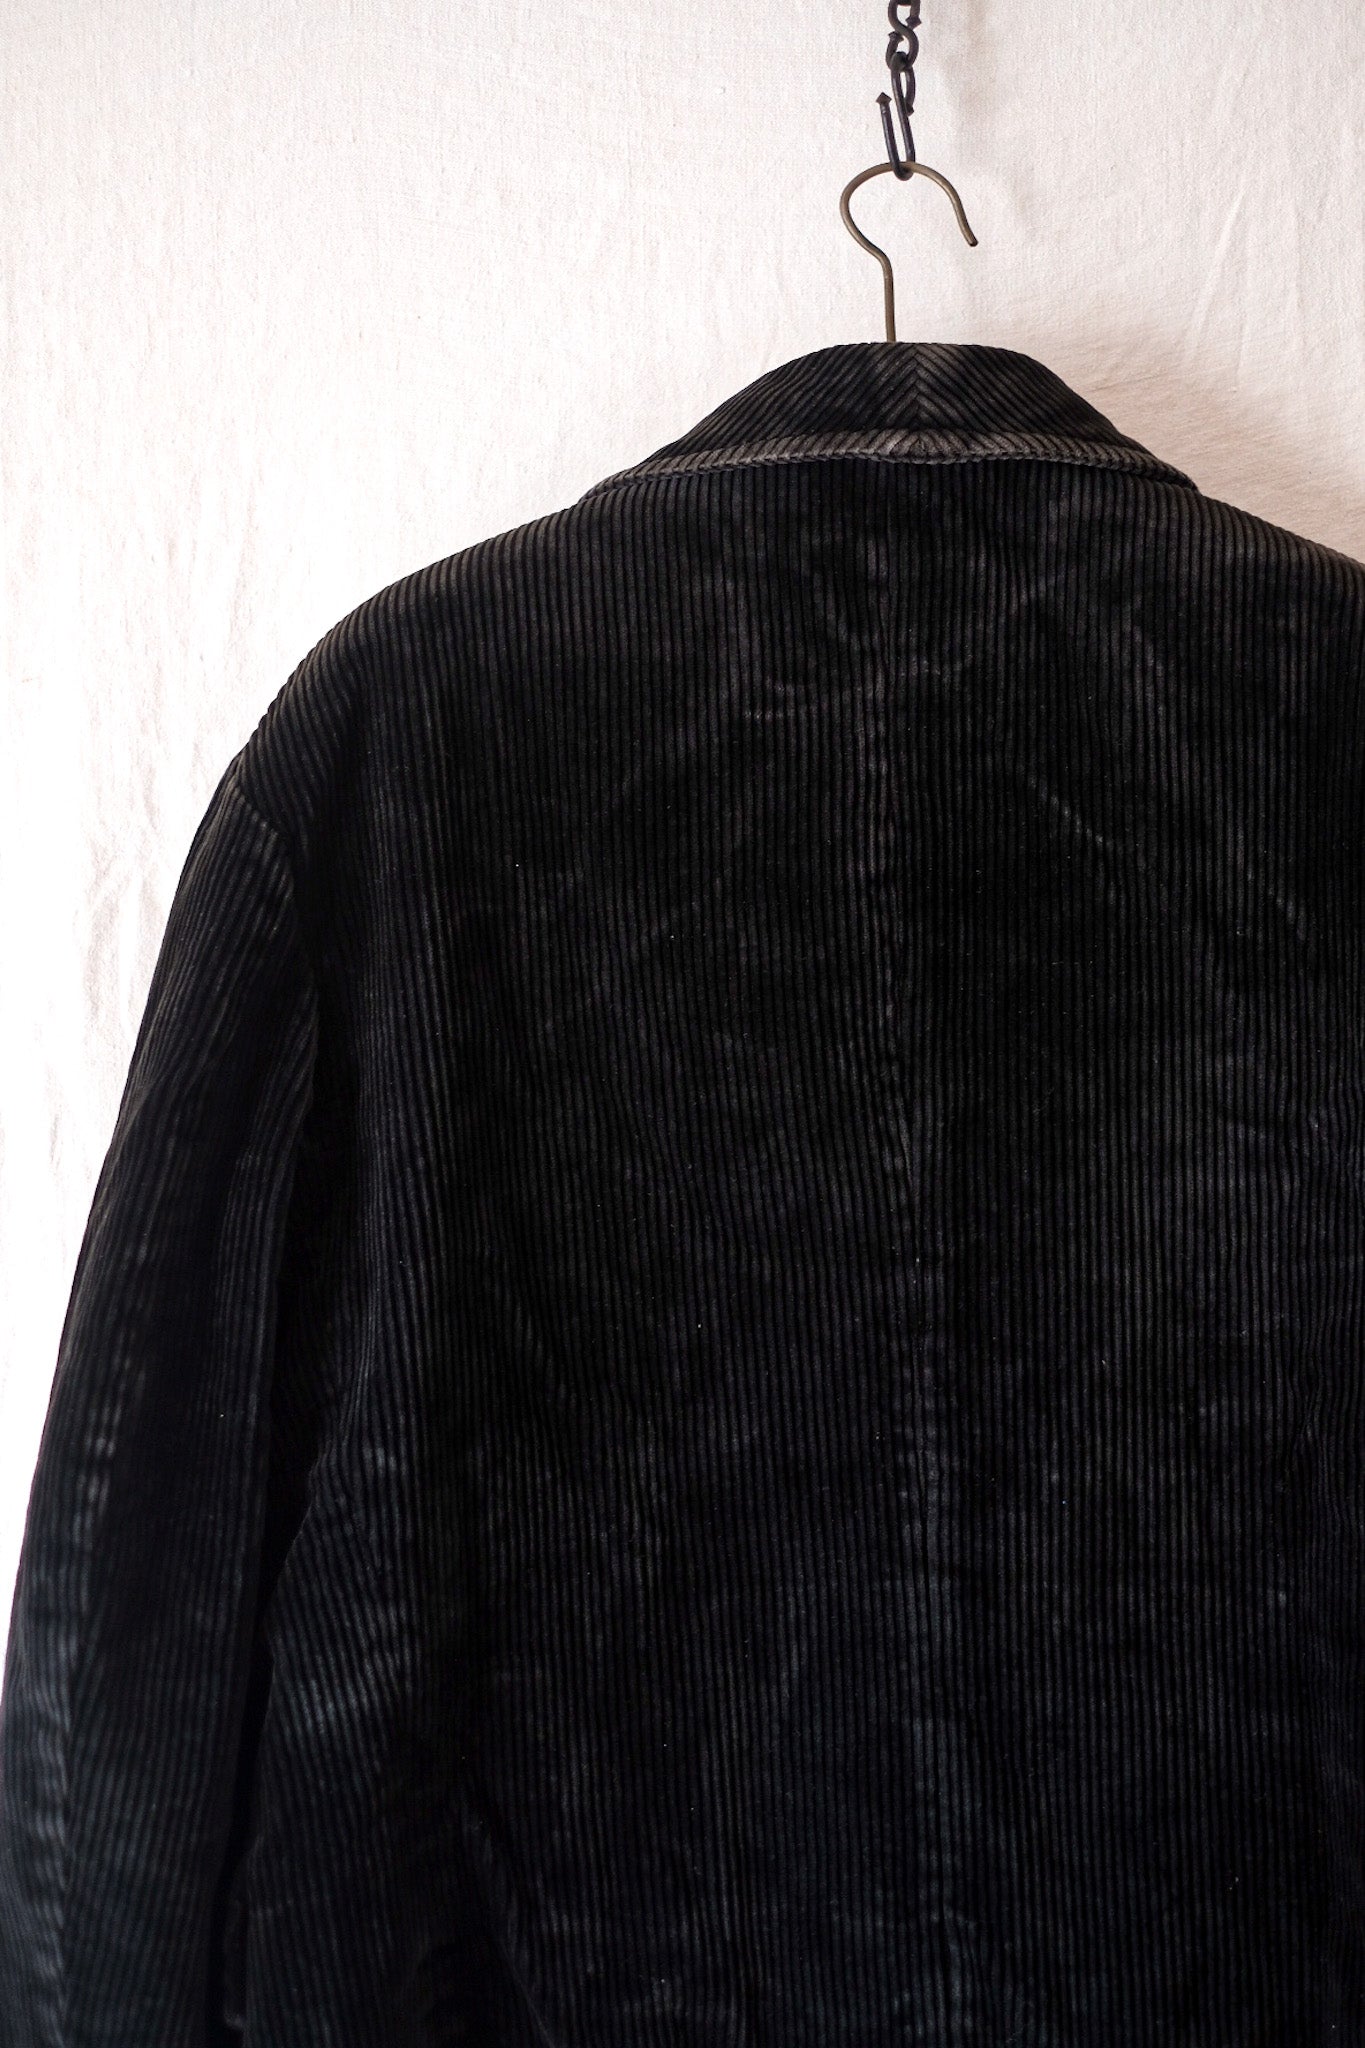 【~40's】French Vintage Black Corduroy Hunting Gamekeeper Jacket